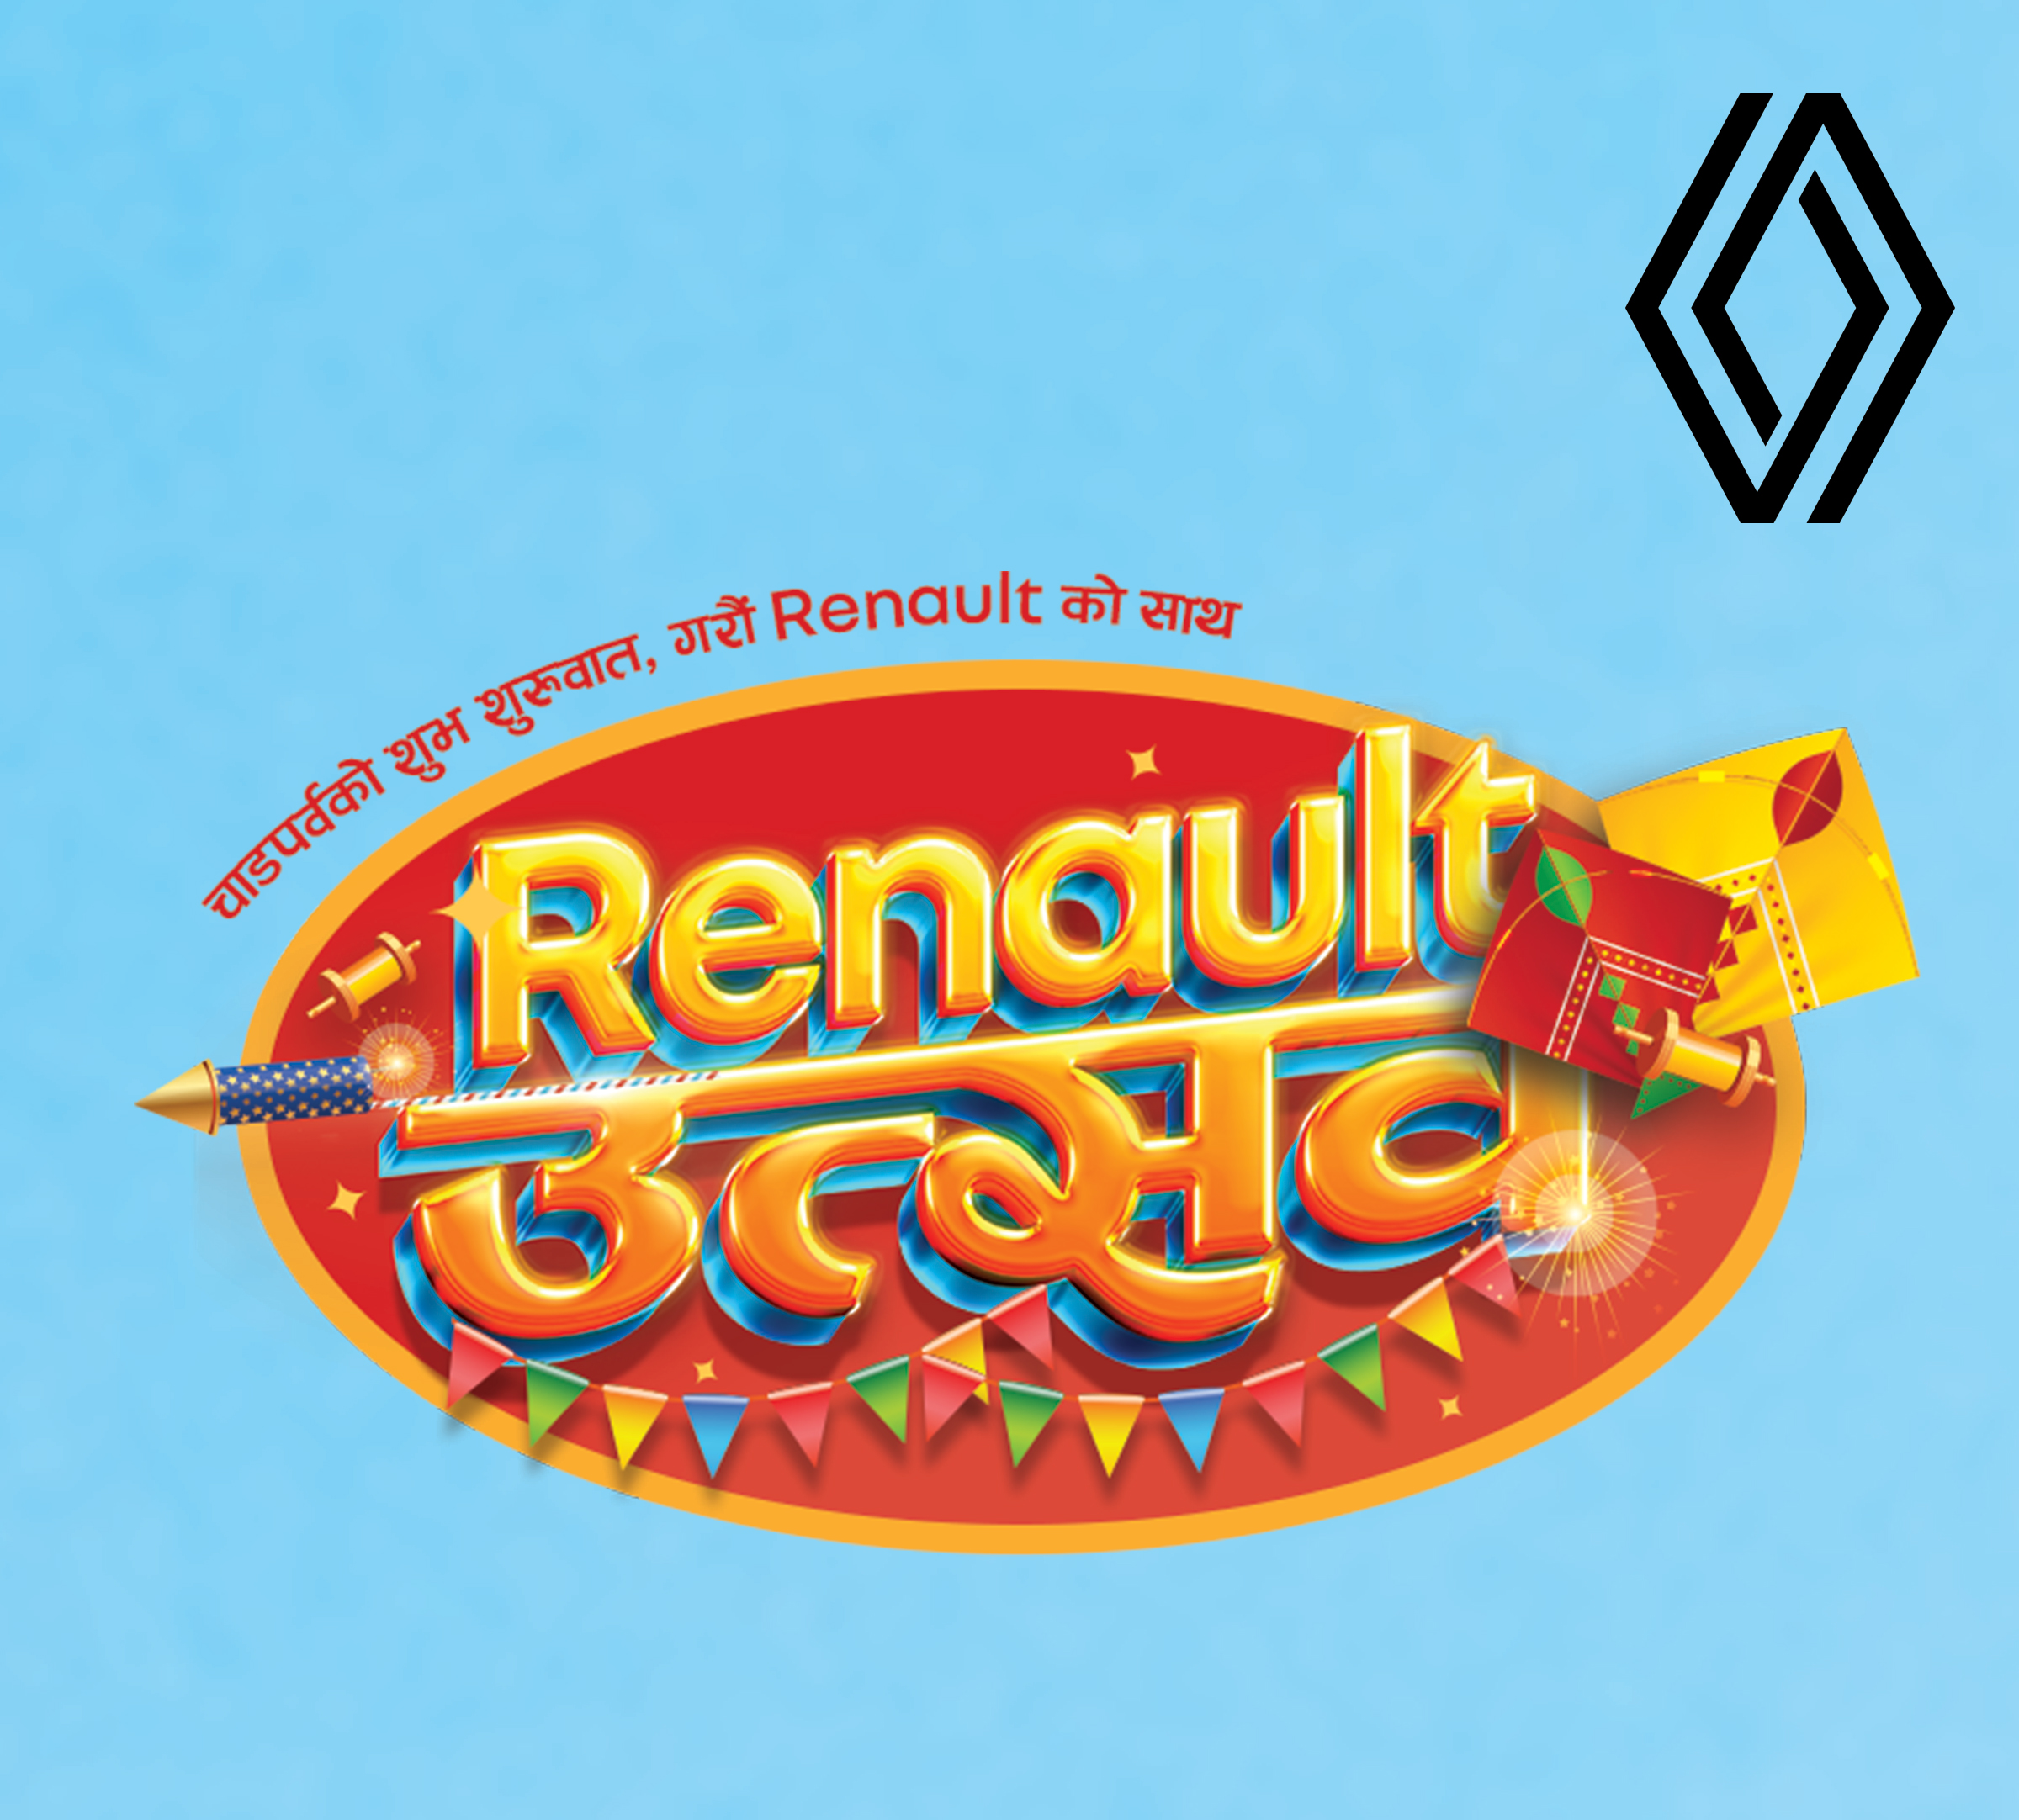 Renault launches “Renault Utsav” Dashain/Tihar Campaign